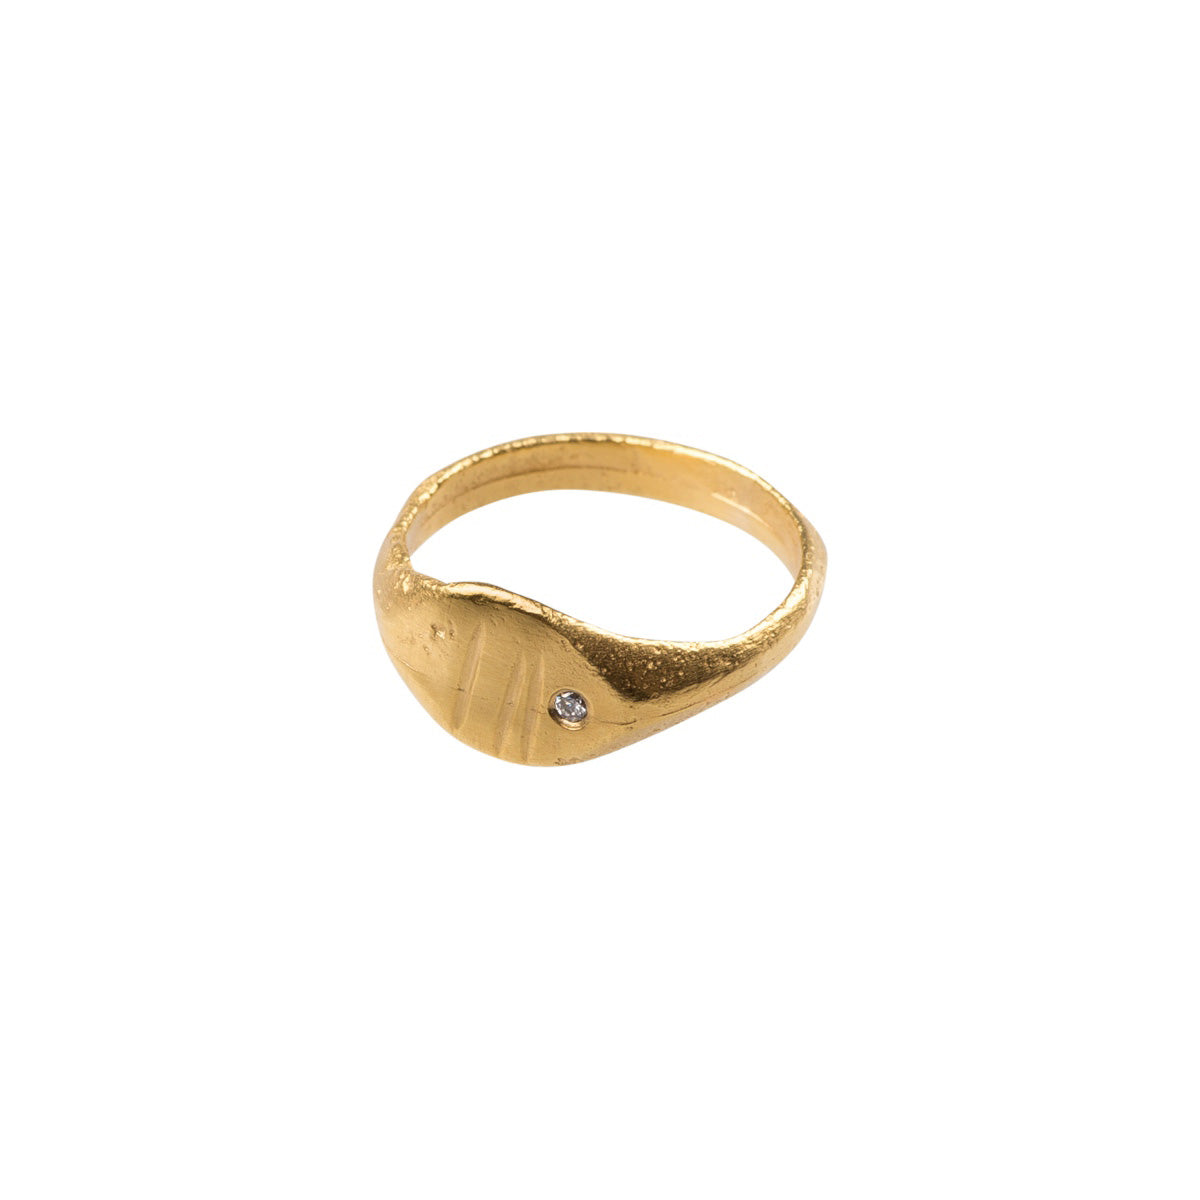 Antique Roman Ring